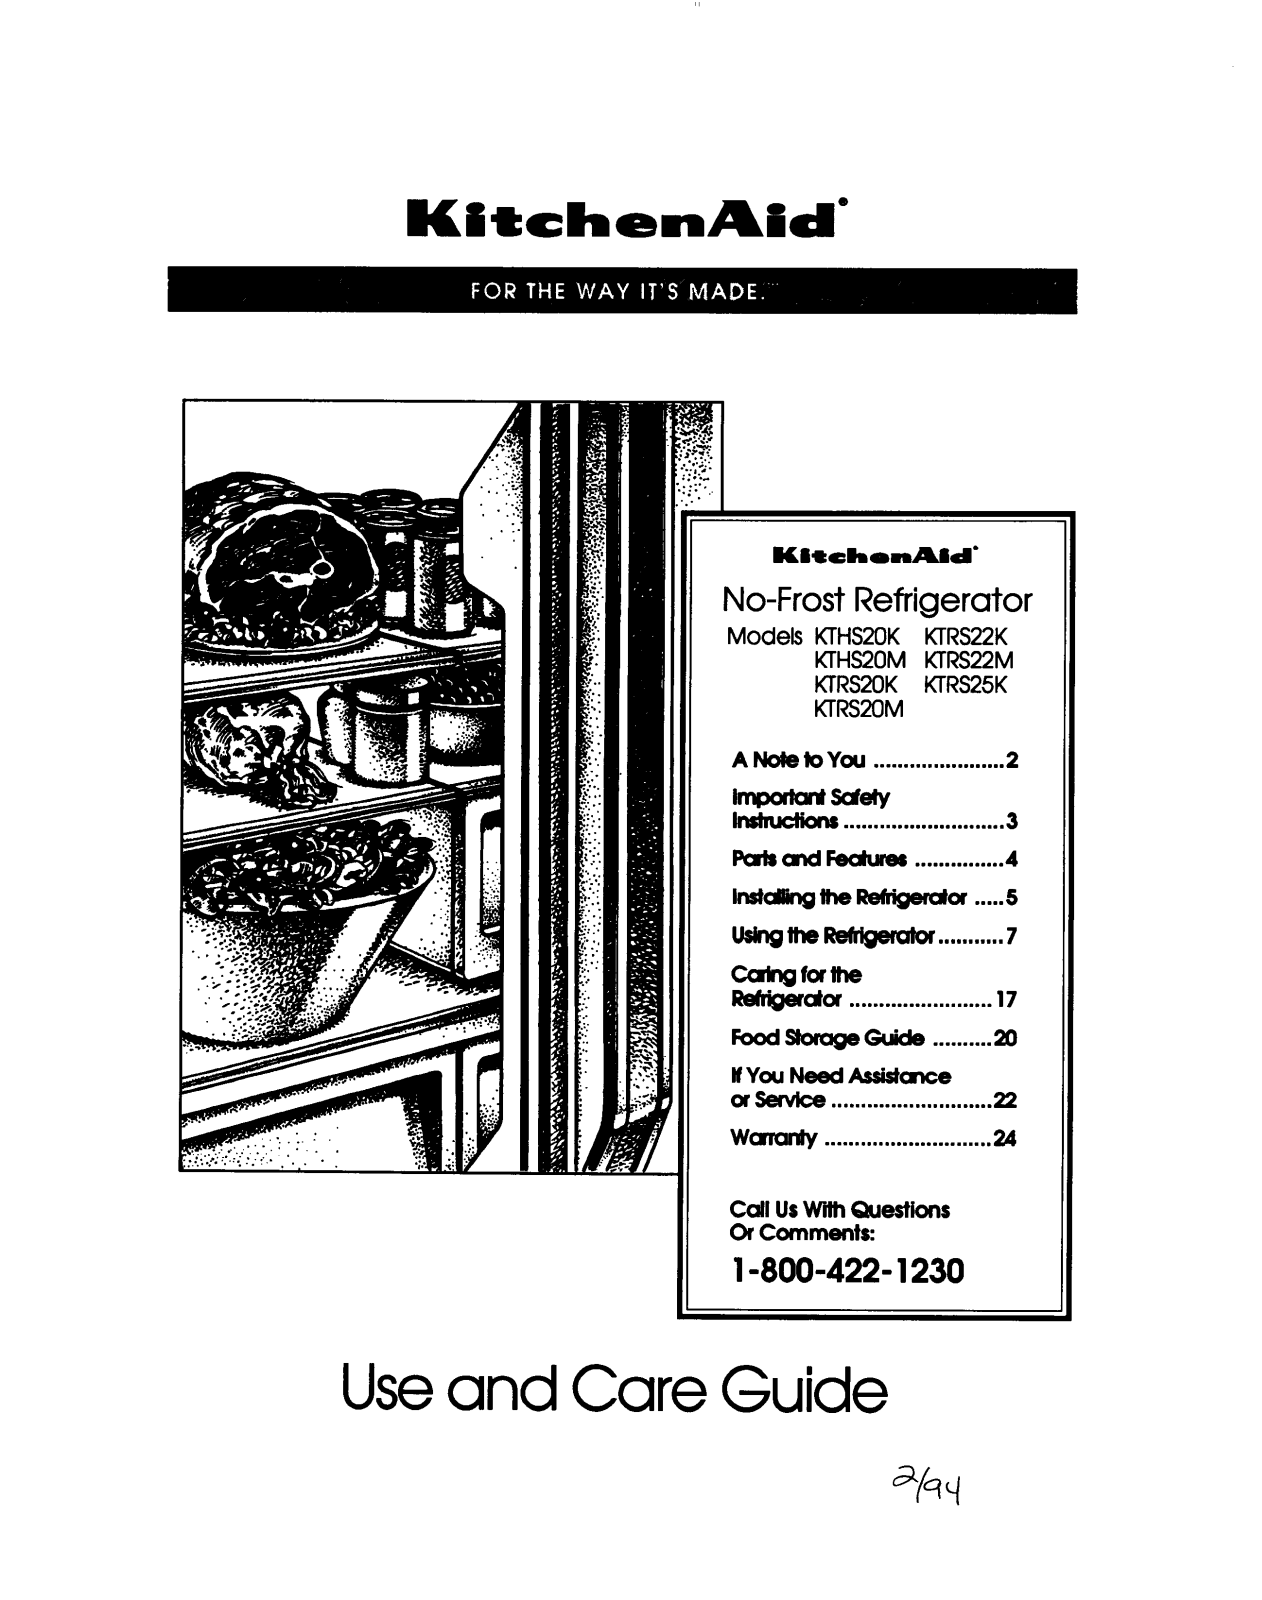 KitchenAid KTHS20M, KTRS20K, KTRS20M, KTRS22K, KTRS22M Owner's Manual